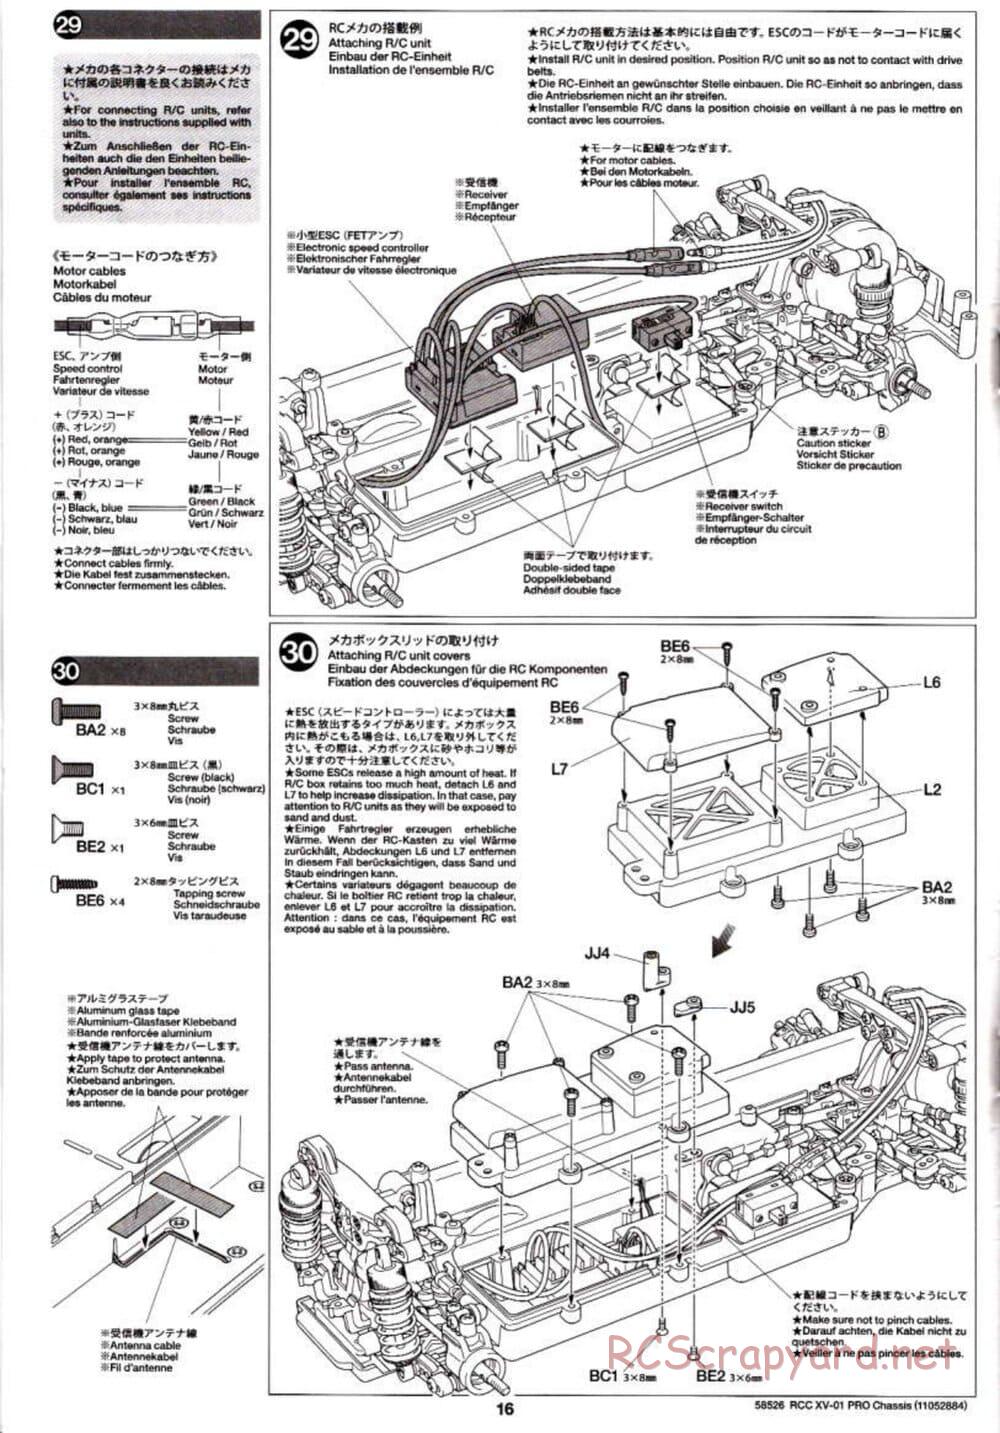 Tamiya - XV-01 PRO Chassis - Manual - Page 16